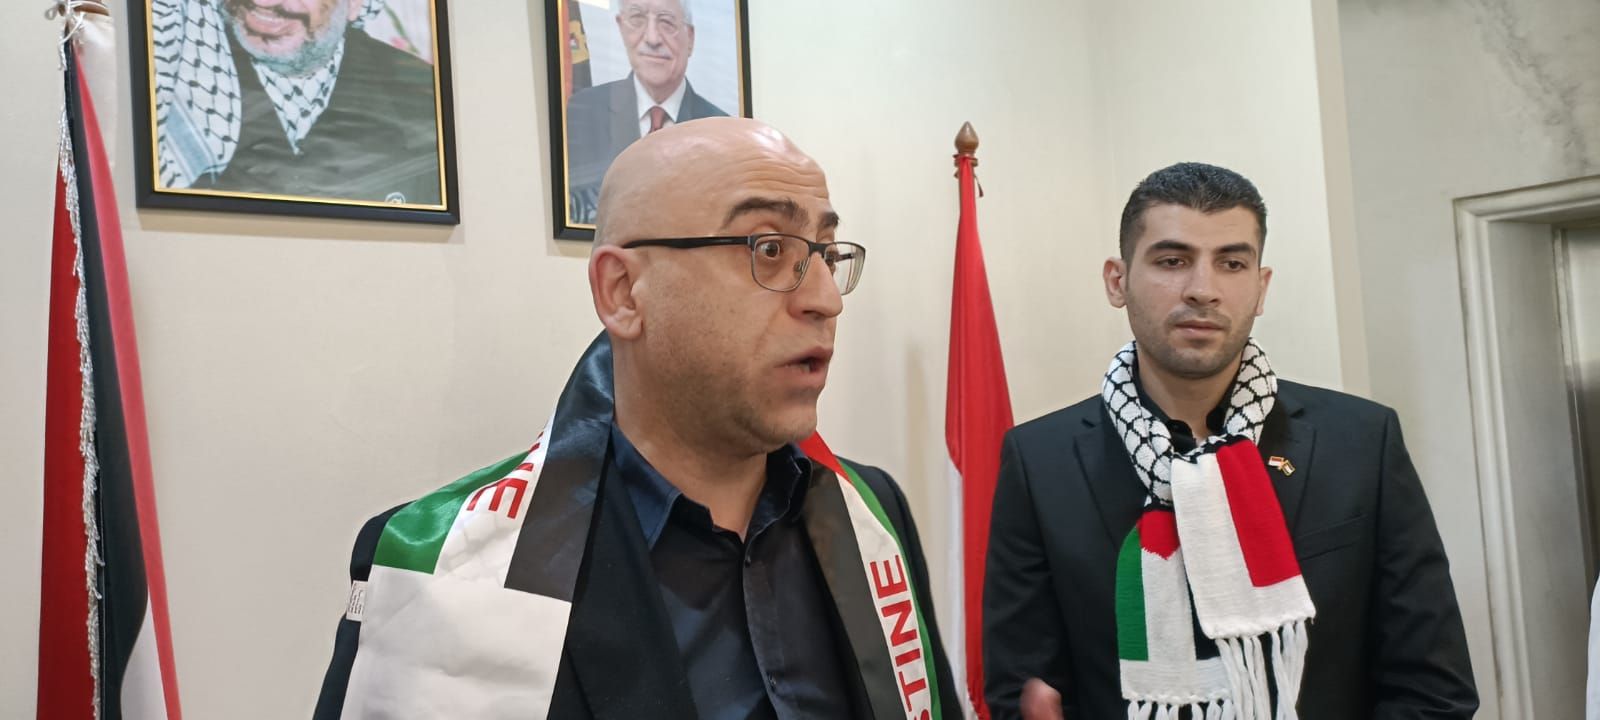 Konsulat Palestina Harap Indonesia Gunakan Posisi Politiknya Desak Negara Lain untuk Hentikan Israel